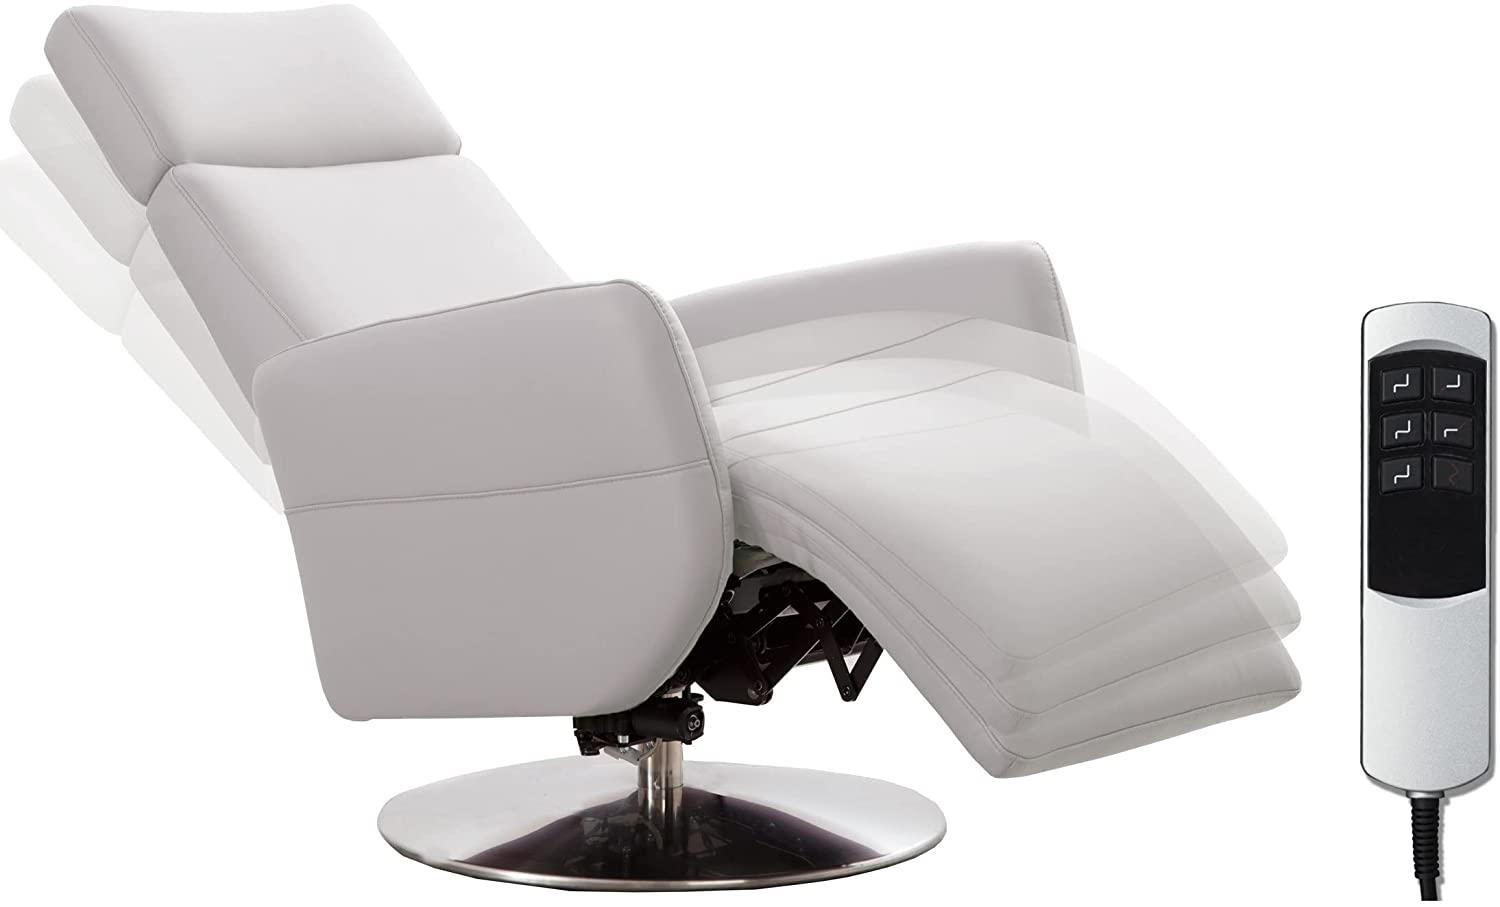 Cavadore TV-Sessel Cobra mit 2 E-Motoren / Elektrischer Fernsehsessel mit Fernbedienung / Relaxfunktion, Liegefunktion / Ergonomie S / Belastbar bis 130 kg / 71 x 108 x 82 / Echtleder Weiß Bild 1